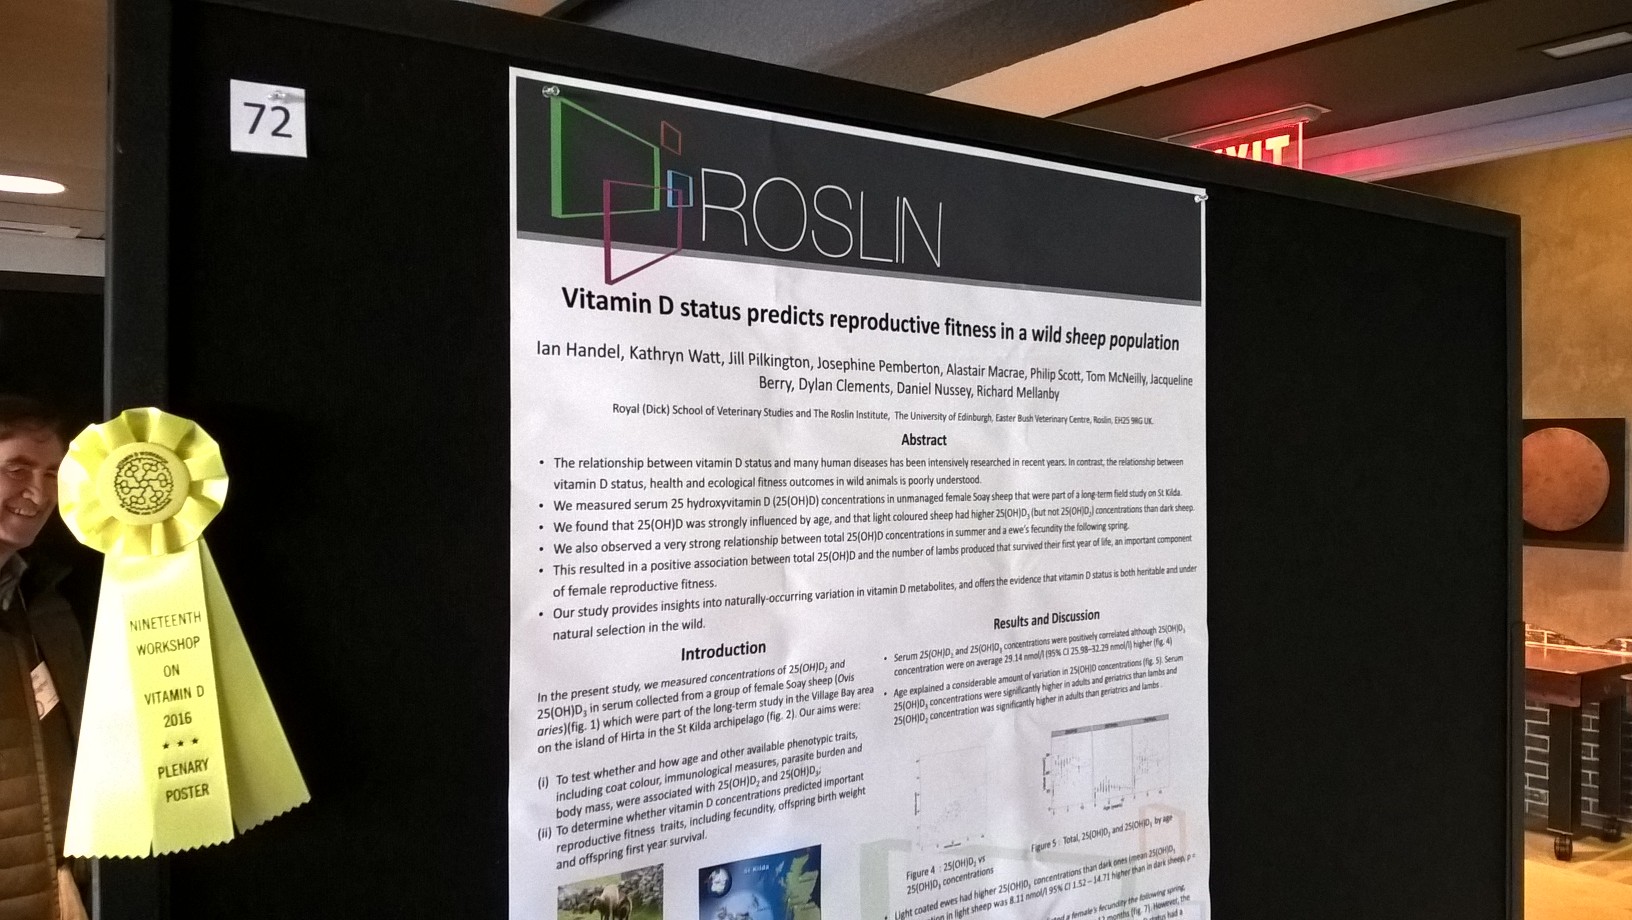 Poster Prize awarded to VitDAL at 2016 Vitamin D Workshop Conference